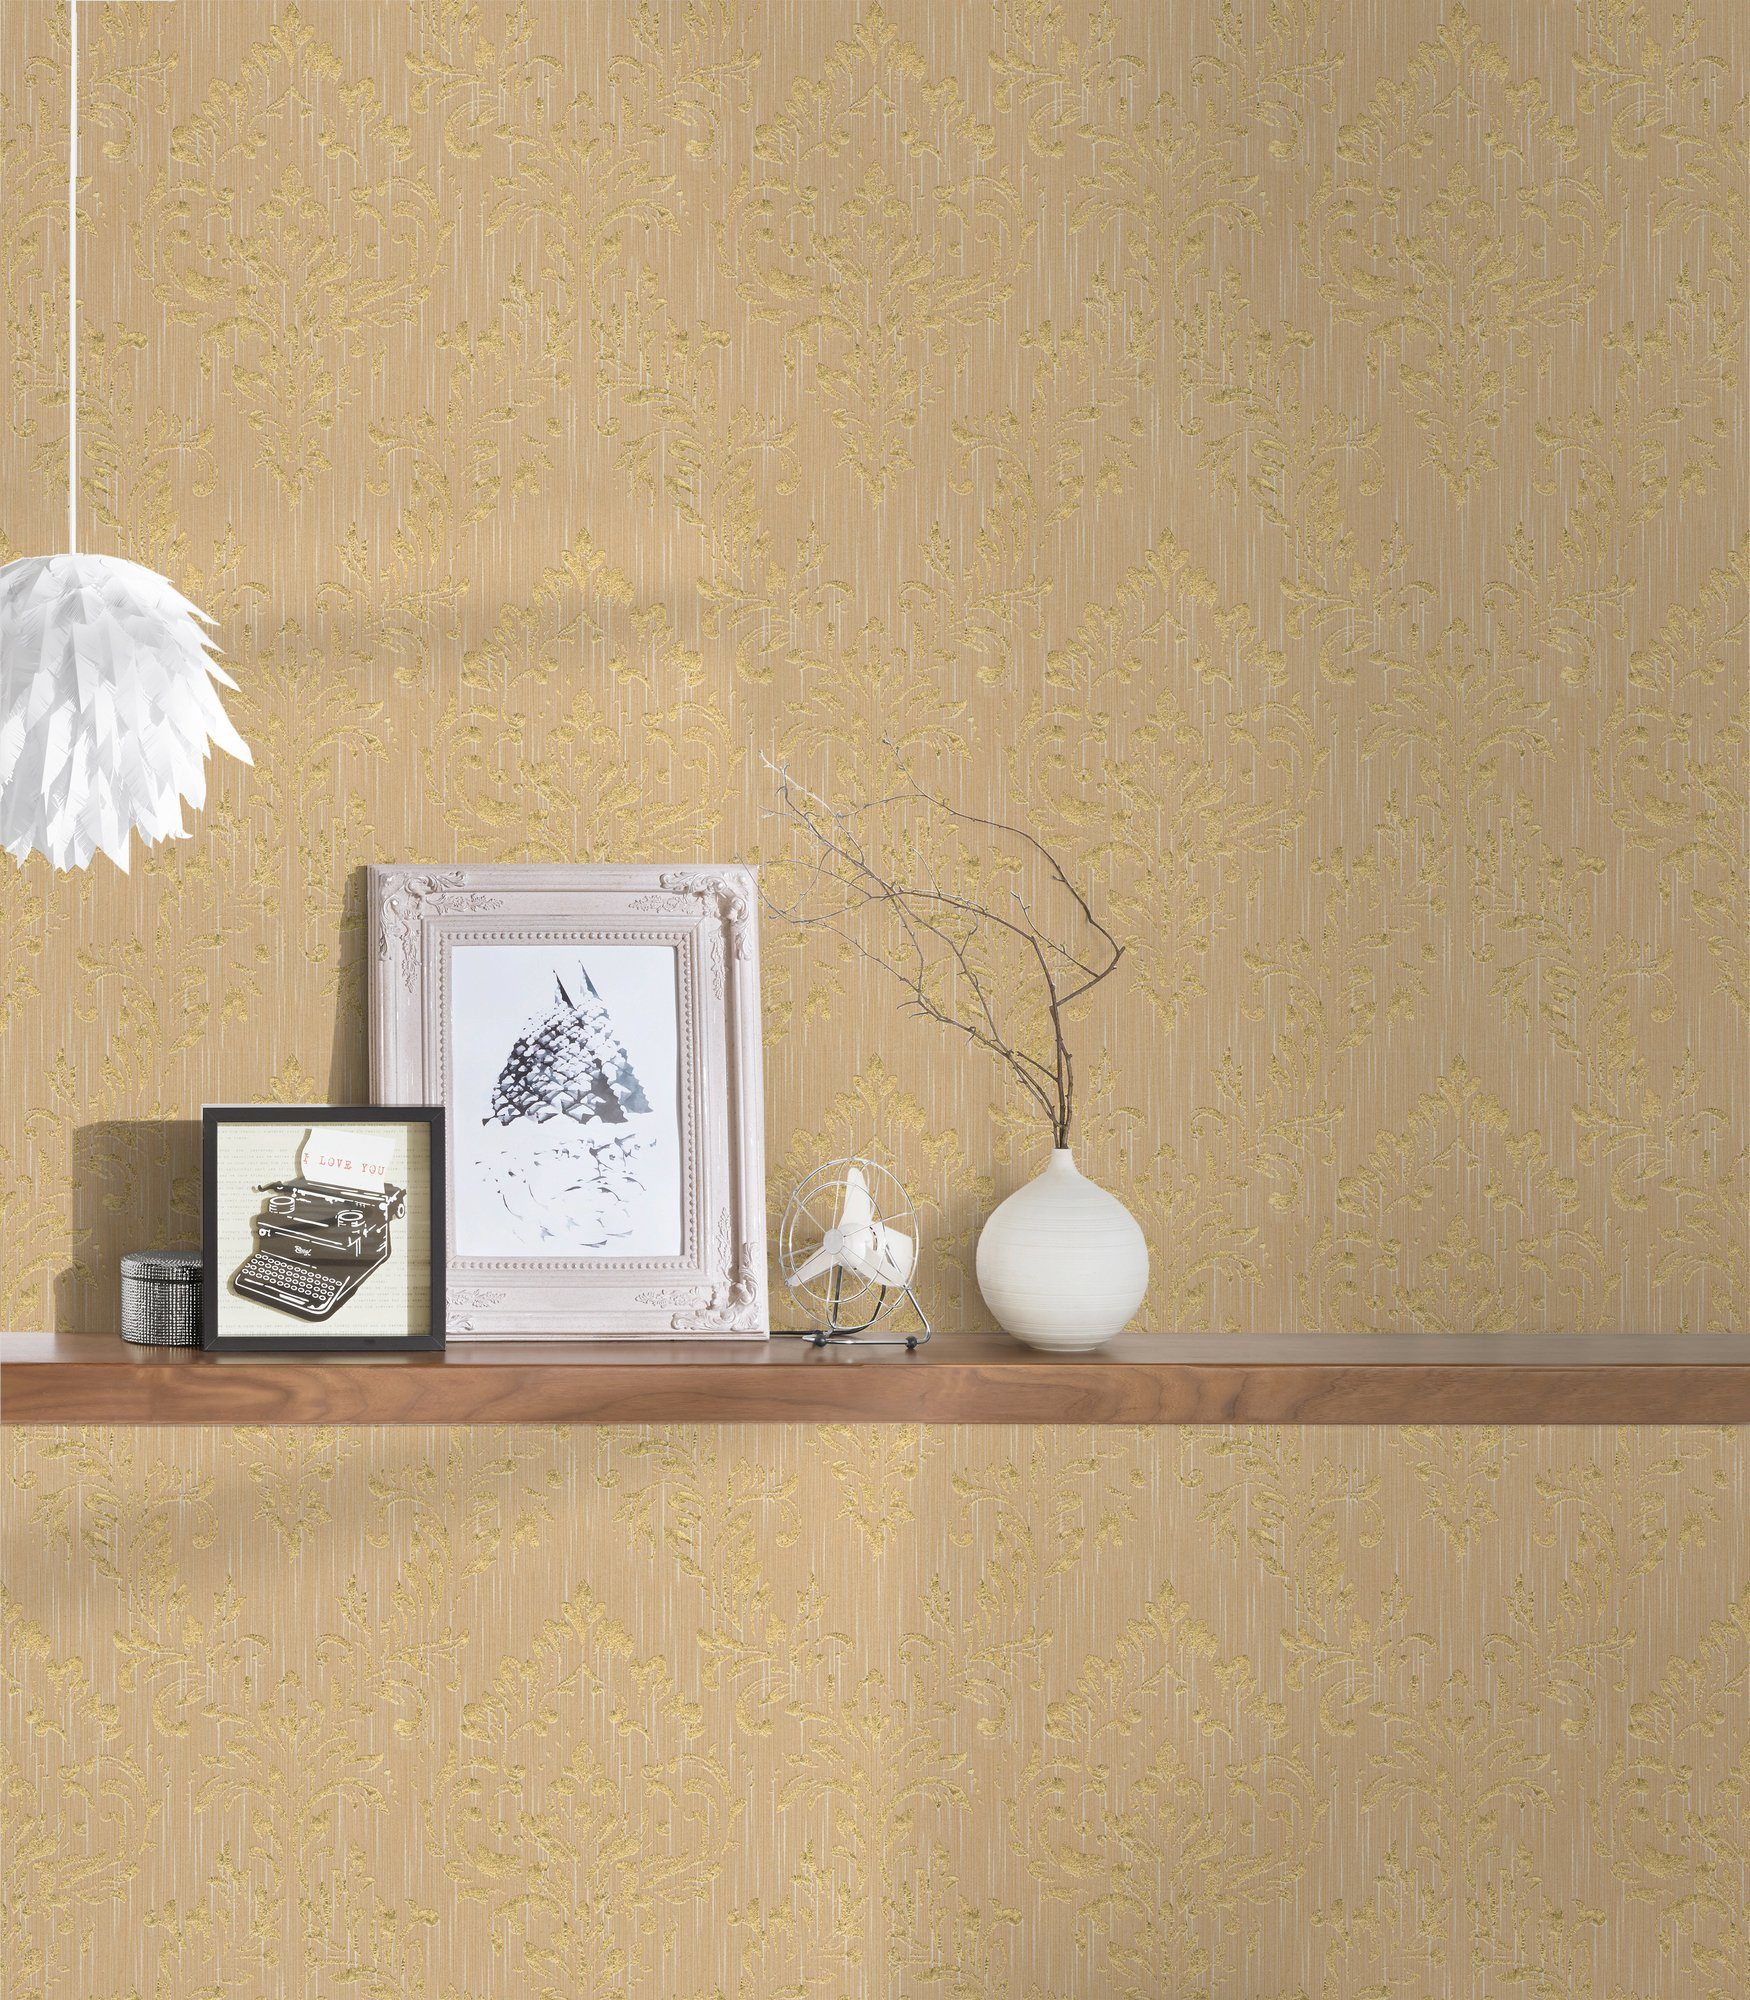 Création matt, glänzend, Architects Silk, Barock, Metallic samtig, Ornament Textiltapete Paper A.S. Barock Tapete gold/beige